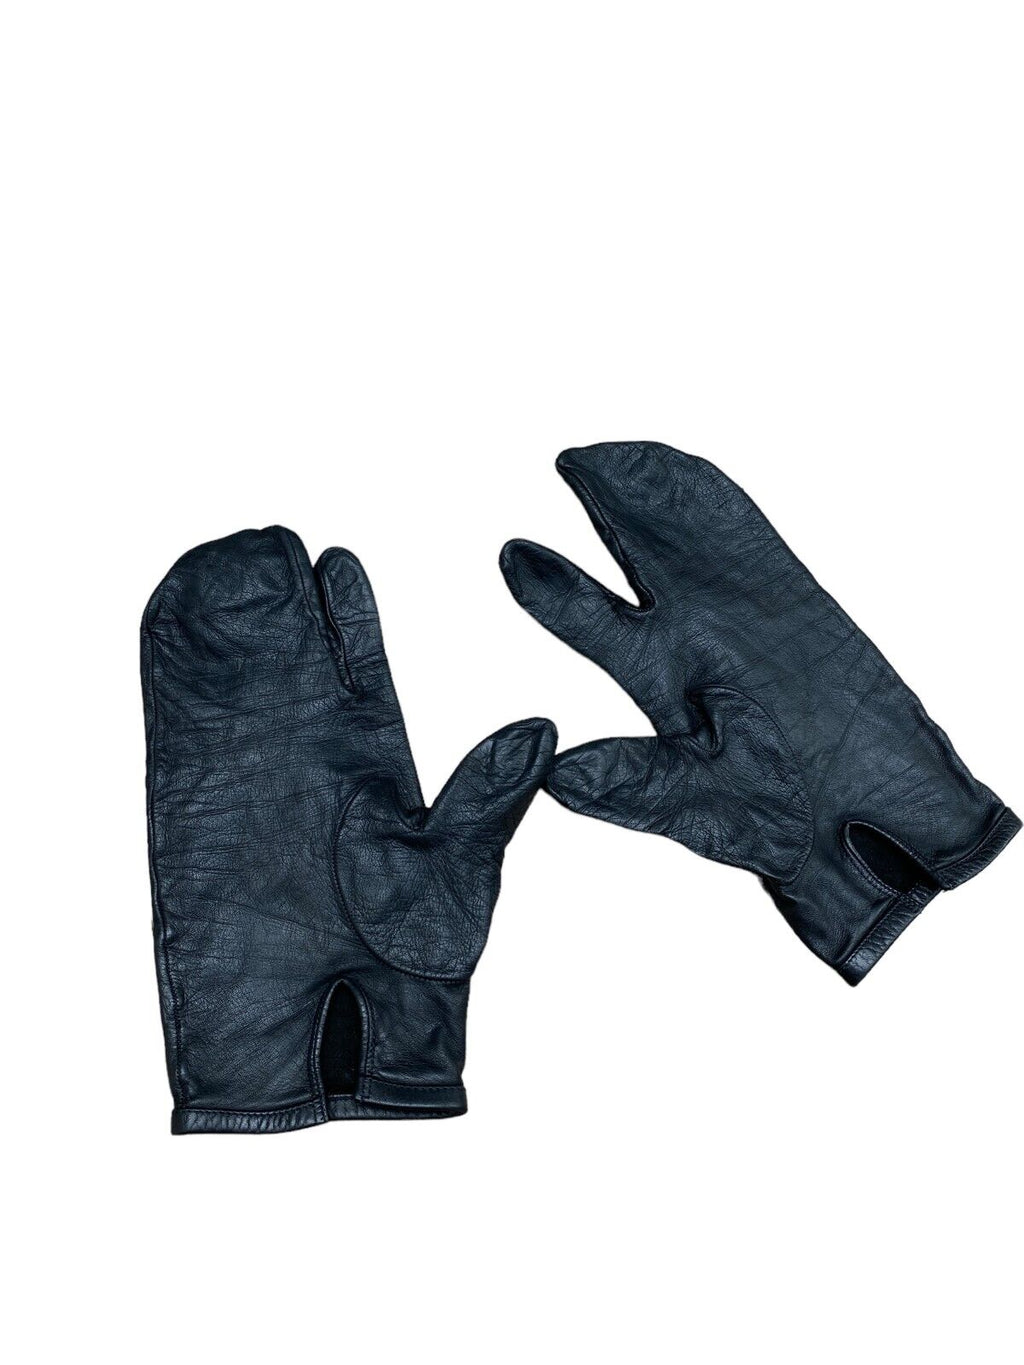 Vintage Black Leather Tabi Gloves Size 7,5 / Men S or Women M